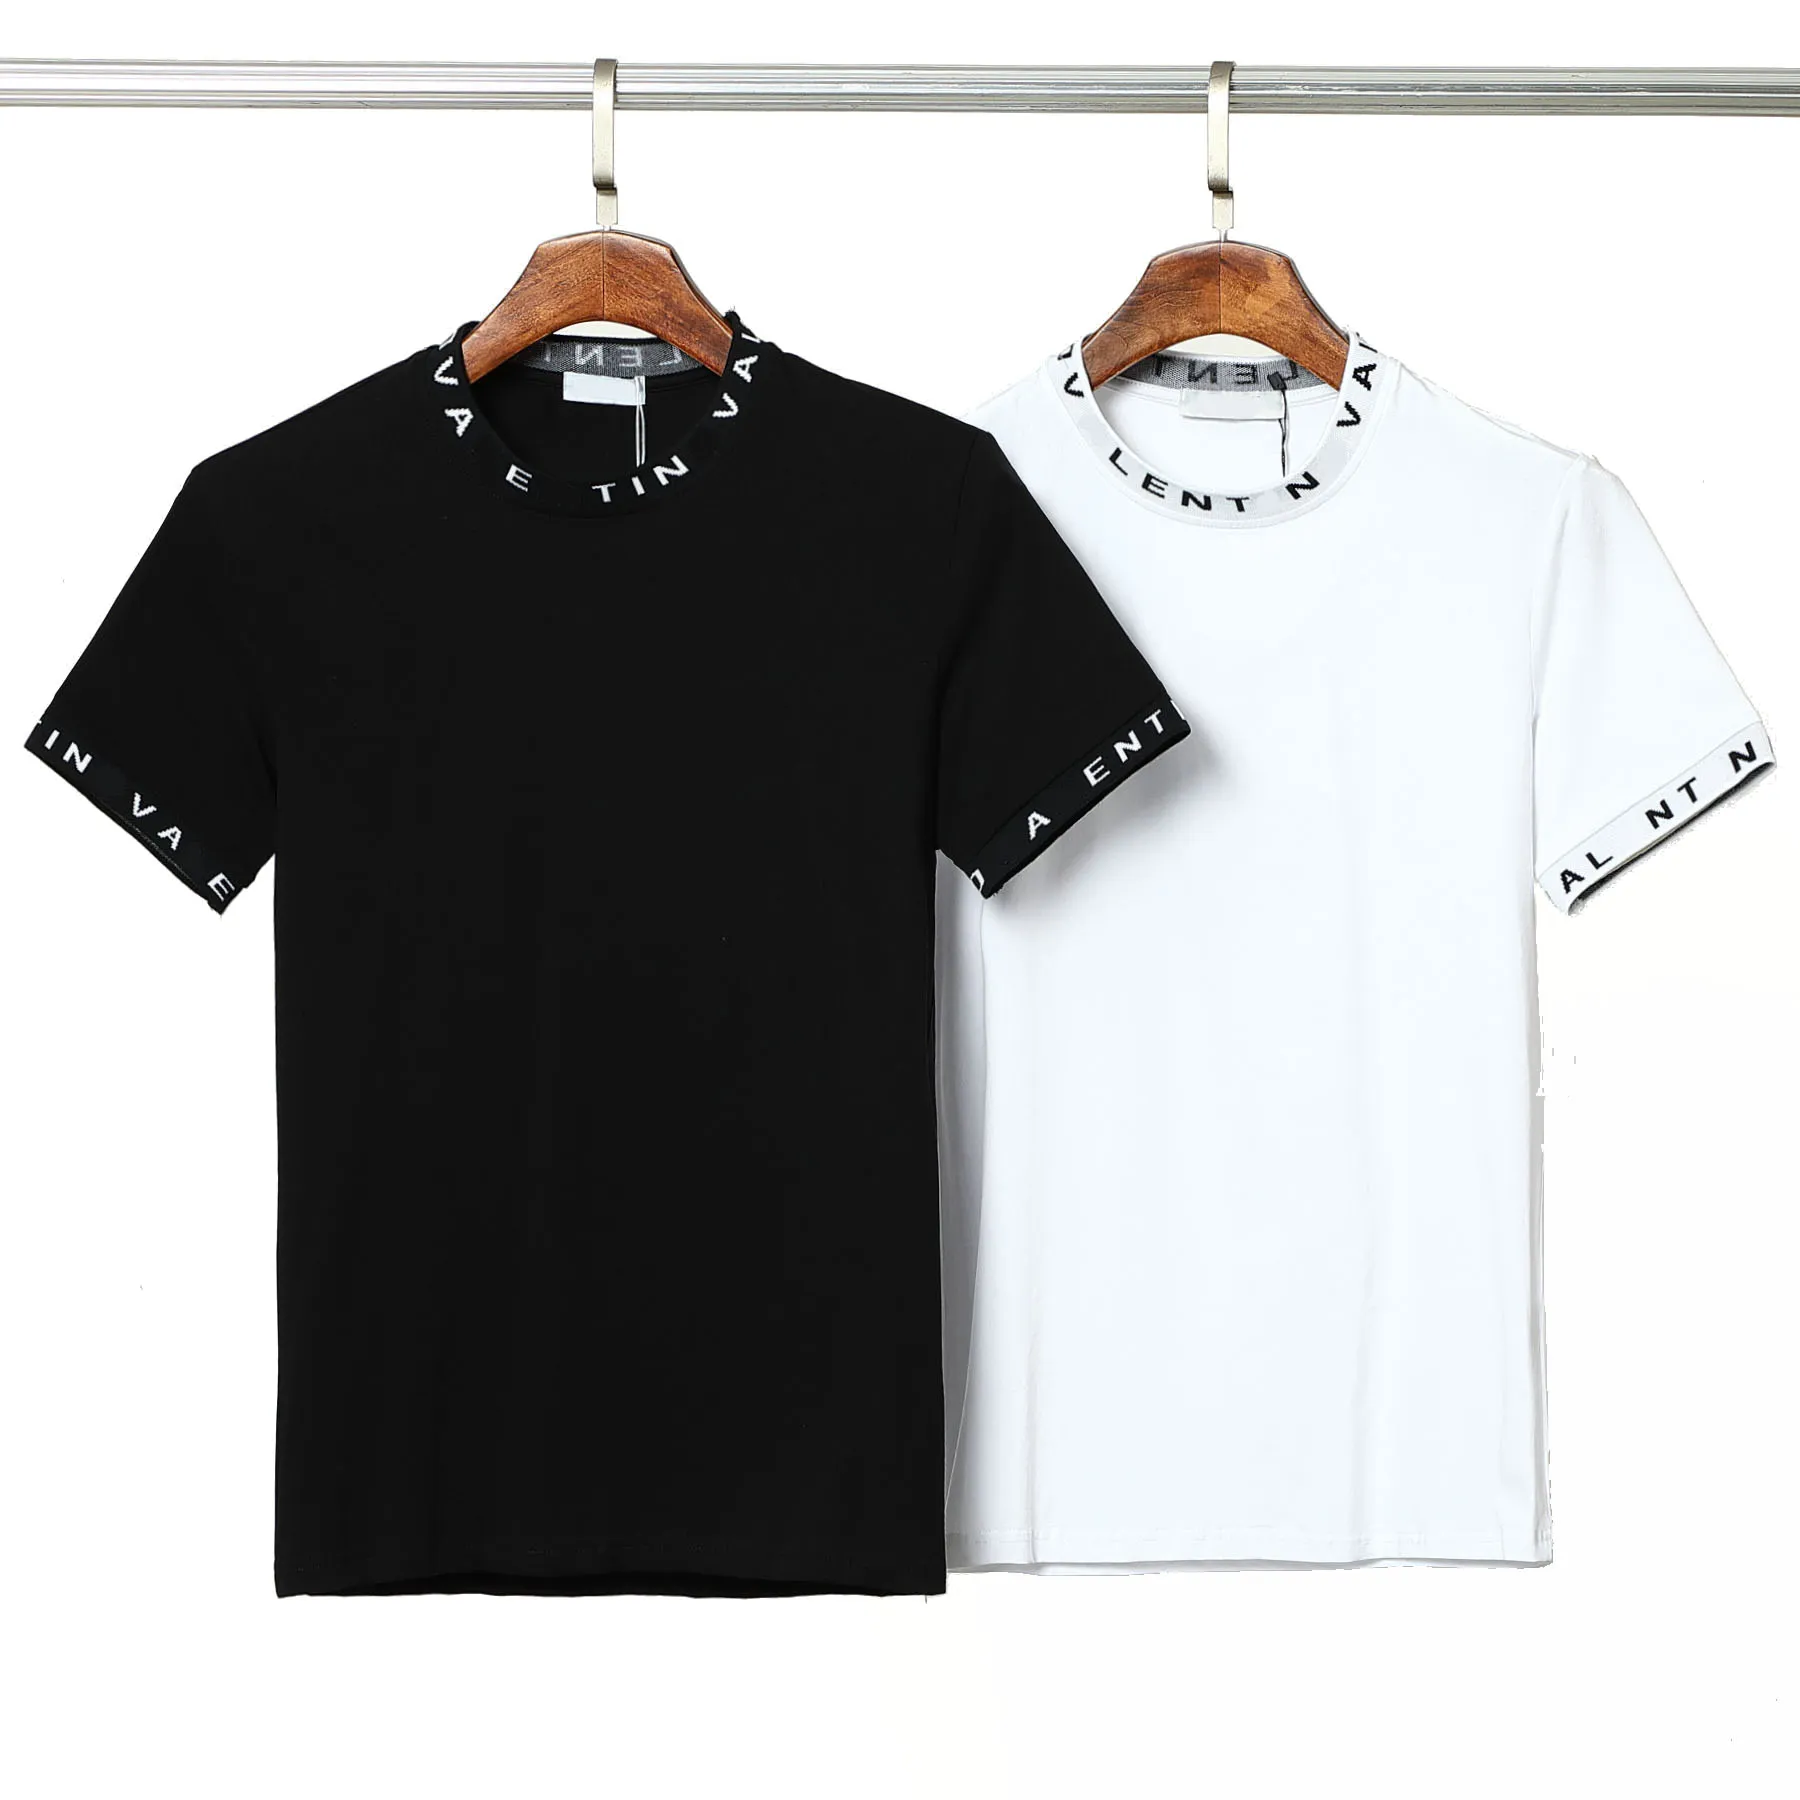 デザイナーブランドメンズレディース Tシャツクラシックプリント文字刺繍半袖オーバーサイズルーズ夏カジュアルカップル綿 100% 黒と白の色トップス Tシャツ